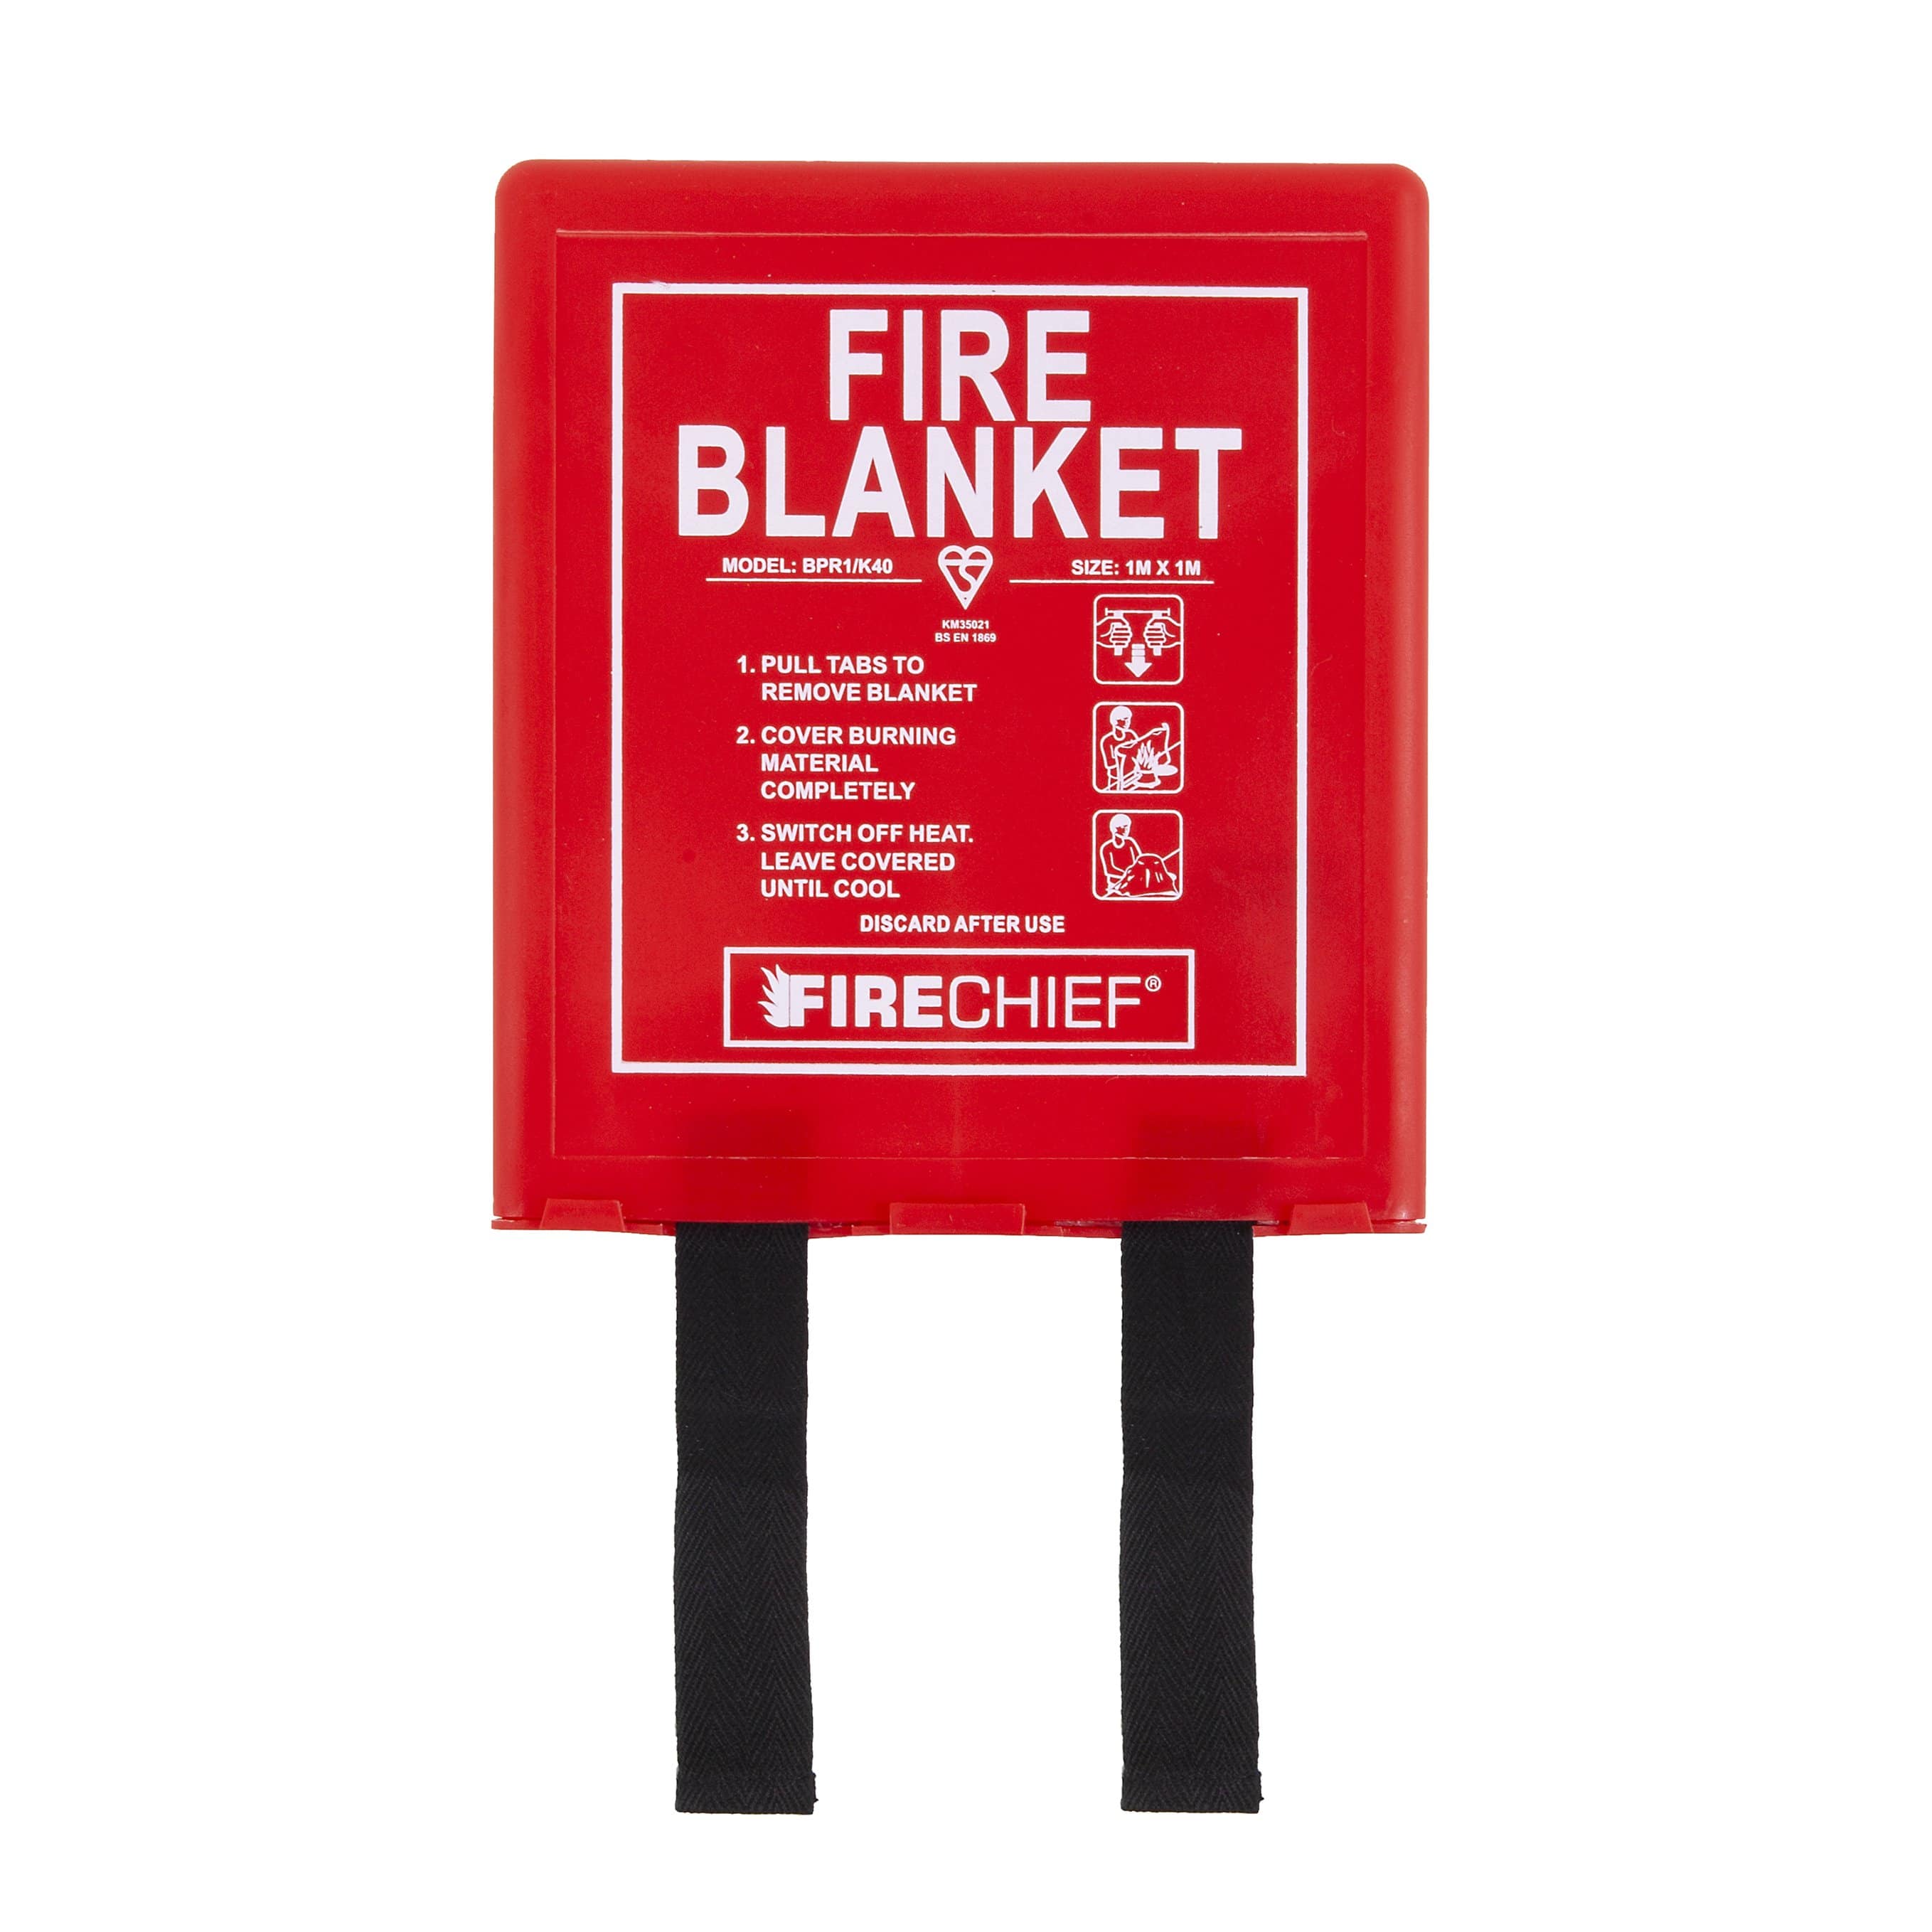 Fire Blanket In PVC Box